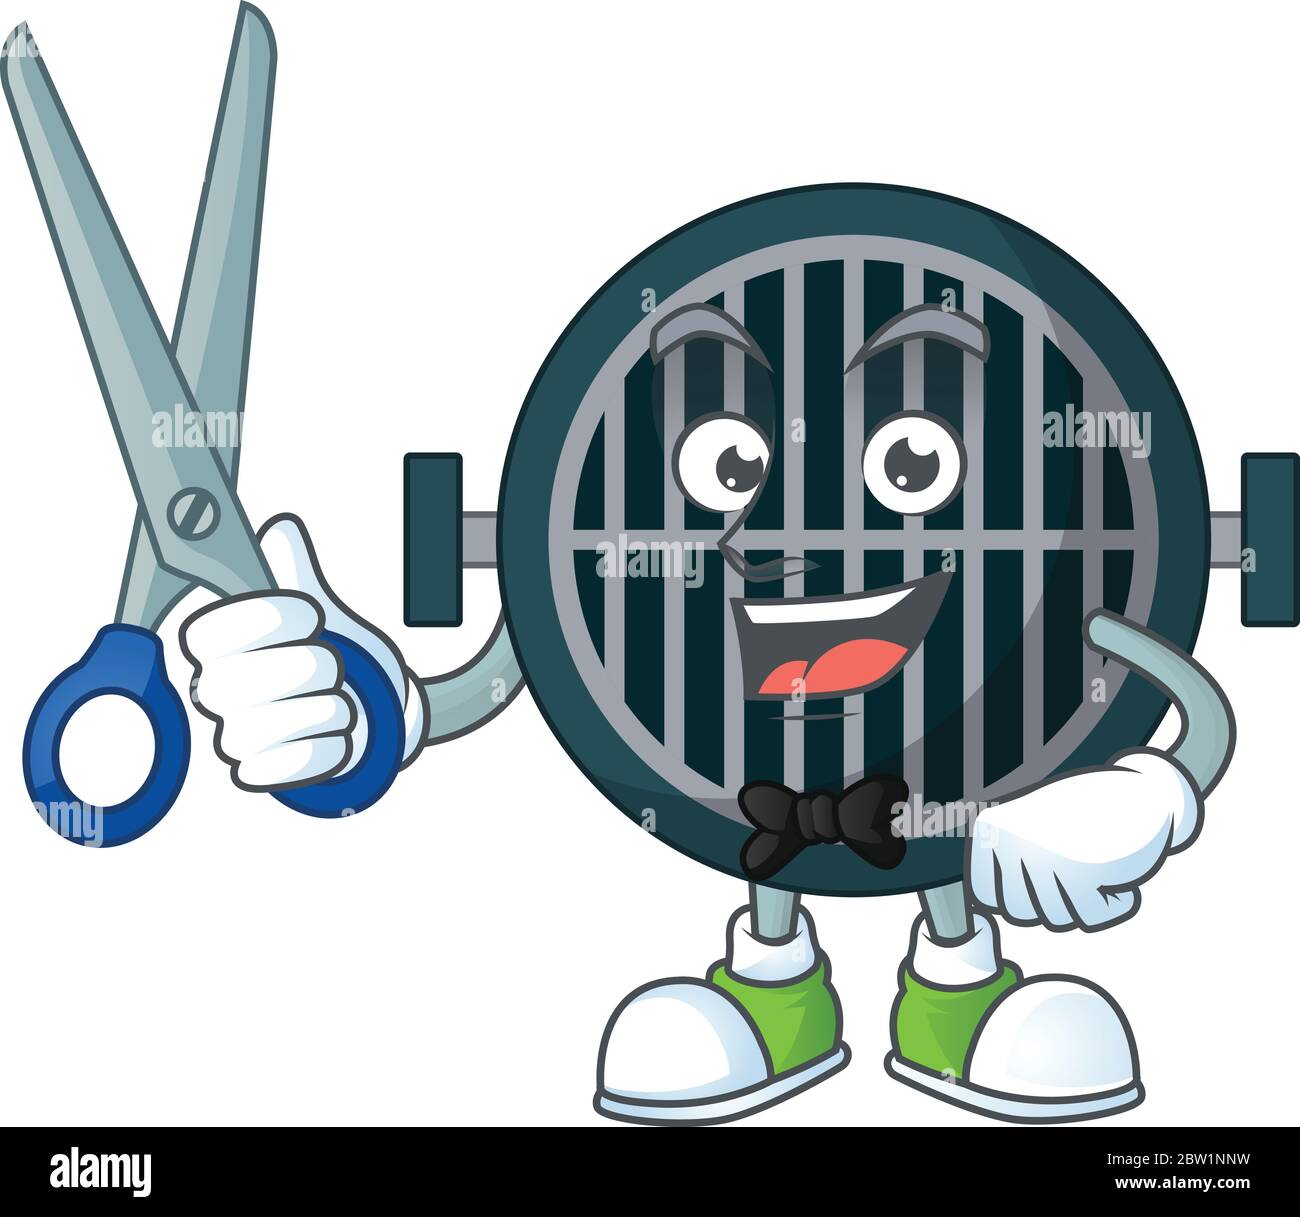 Ein Bild von Grill Barber Cartoon-Figur arbeiten mit Schere. Vektorgrafik Stock Vektor